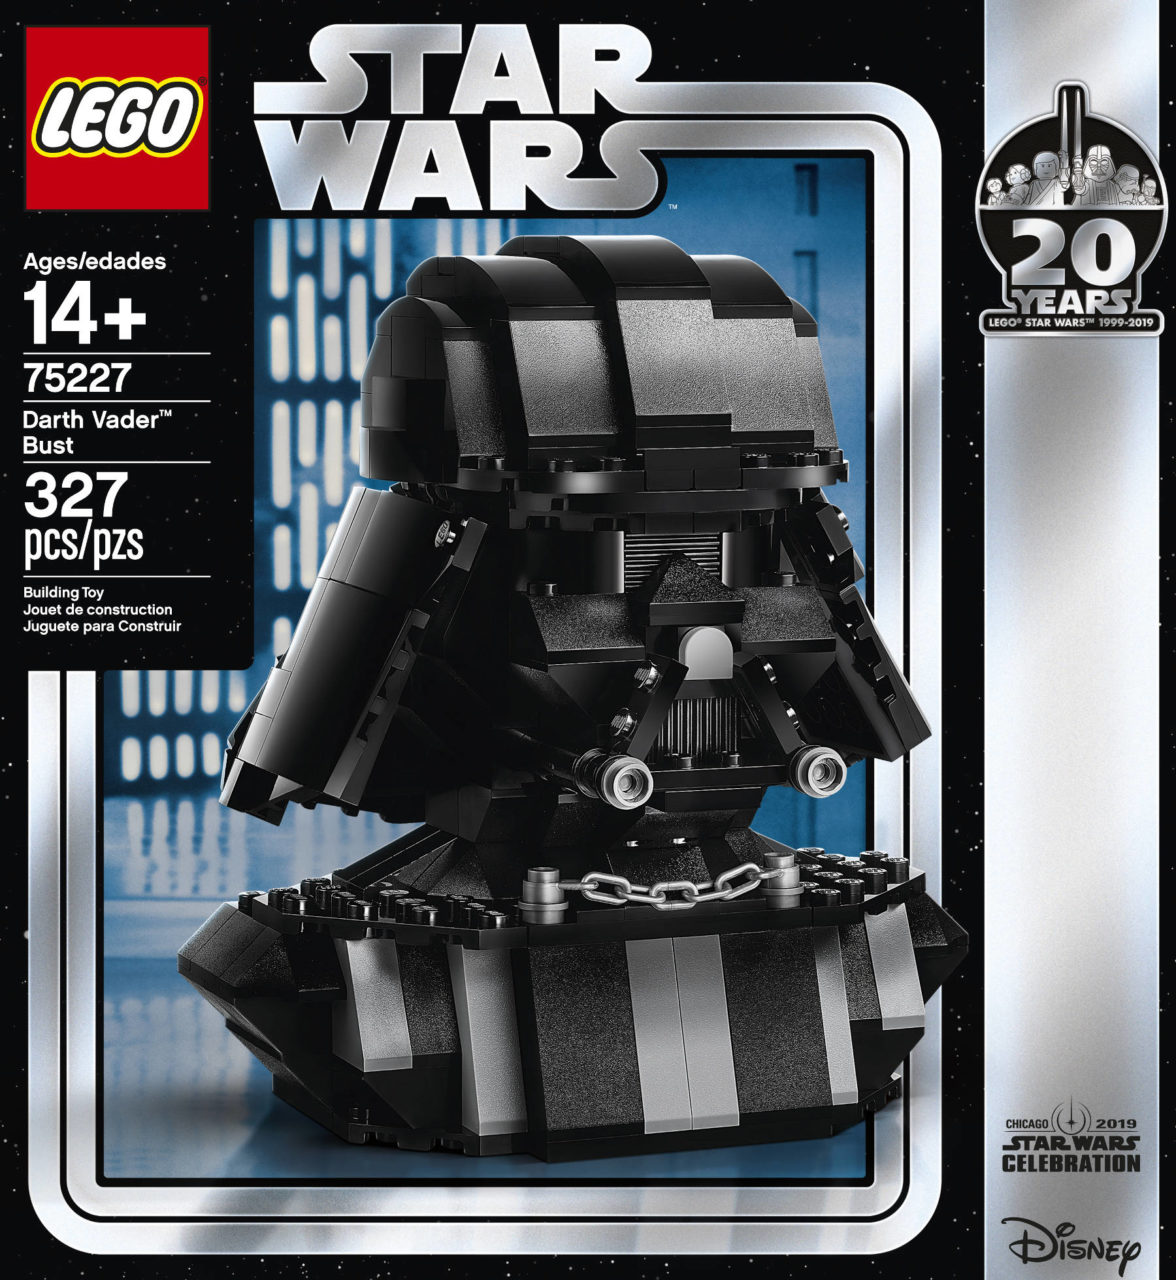 Darth Vader Bust Lego Target Shop, 55% OFF | www.simbolics.cat